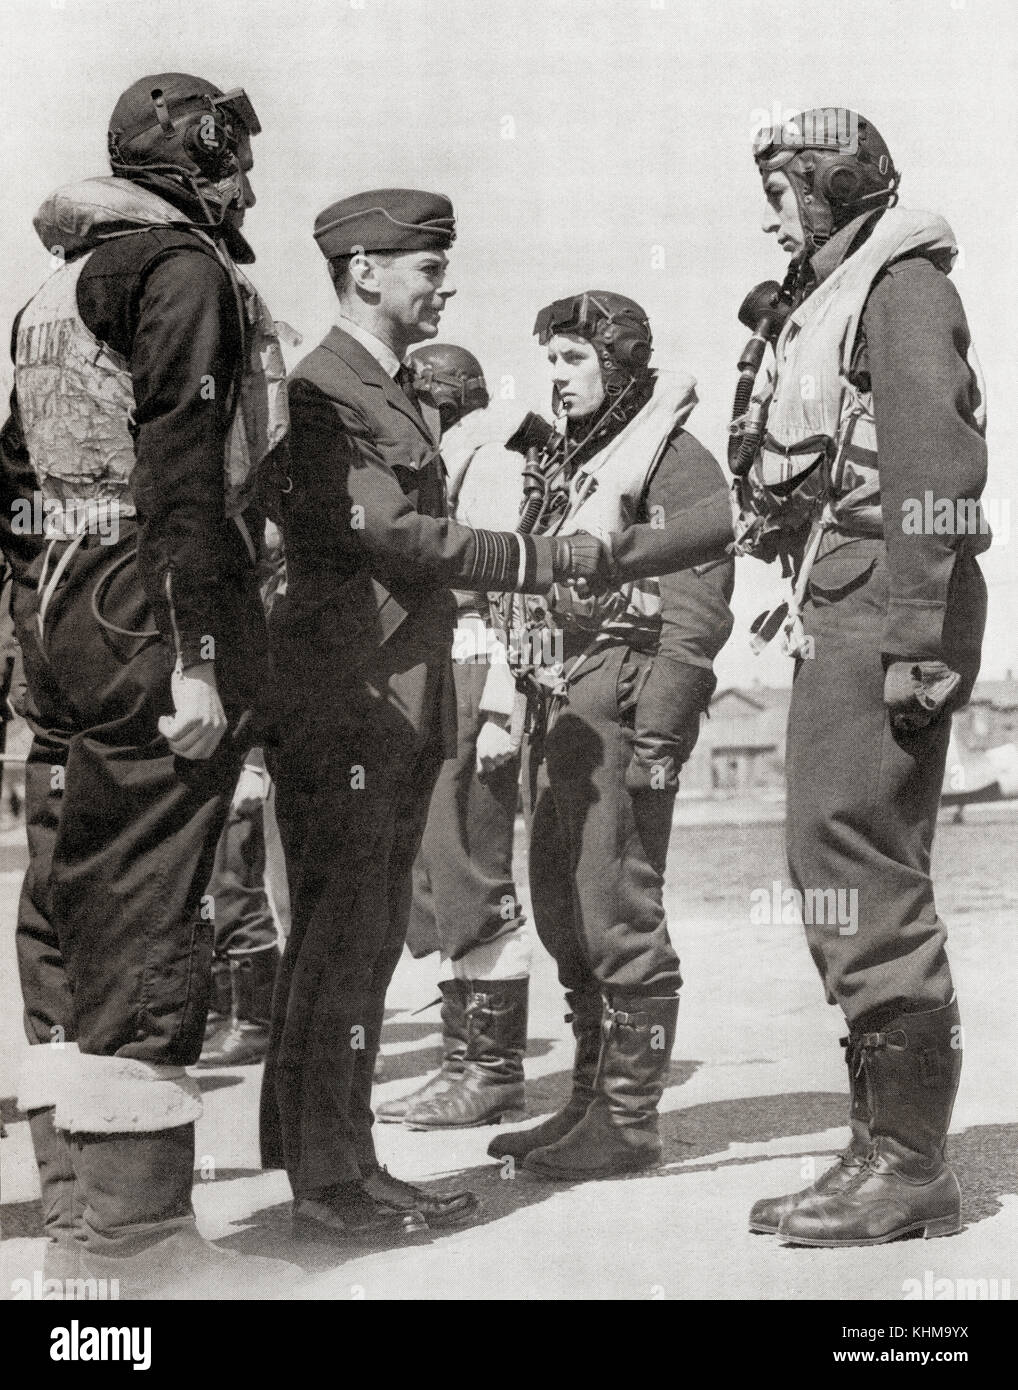 George vi visiter les stations de chasse de la RAF en 1942 pendant la deuxième guerre mondiale. george vi, 1895 - 1952. roi du Royaume-Uni et des dominions du Commonwealth britannique. Banque D'Images